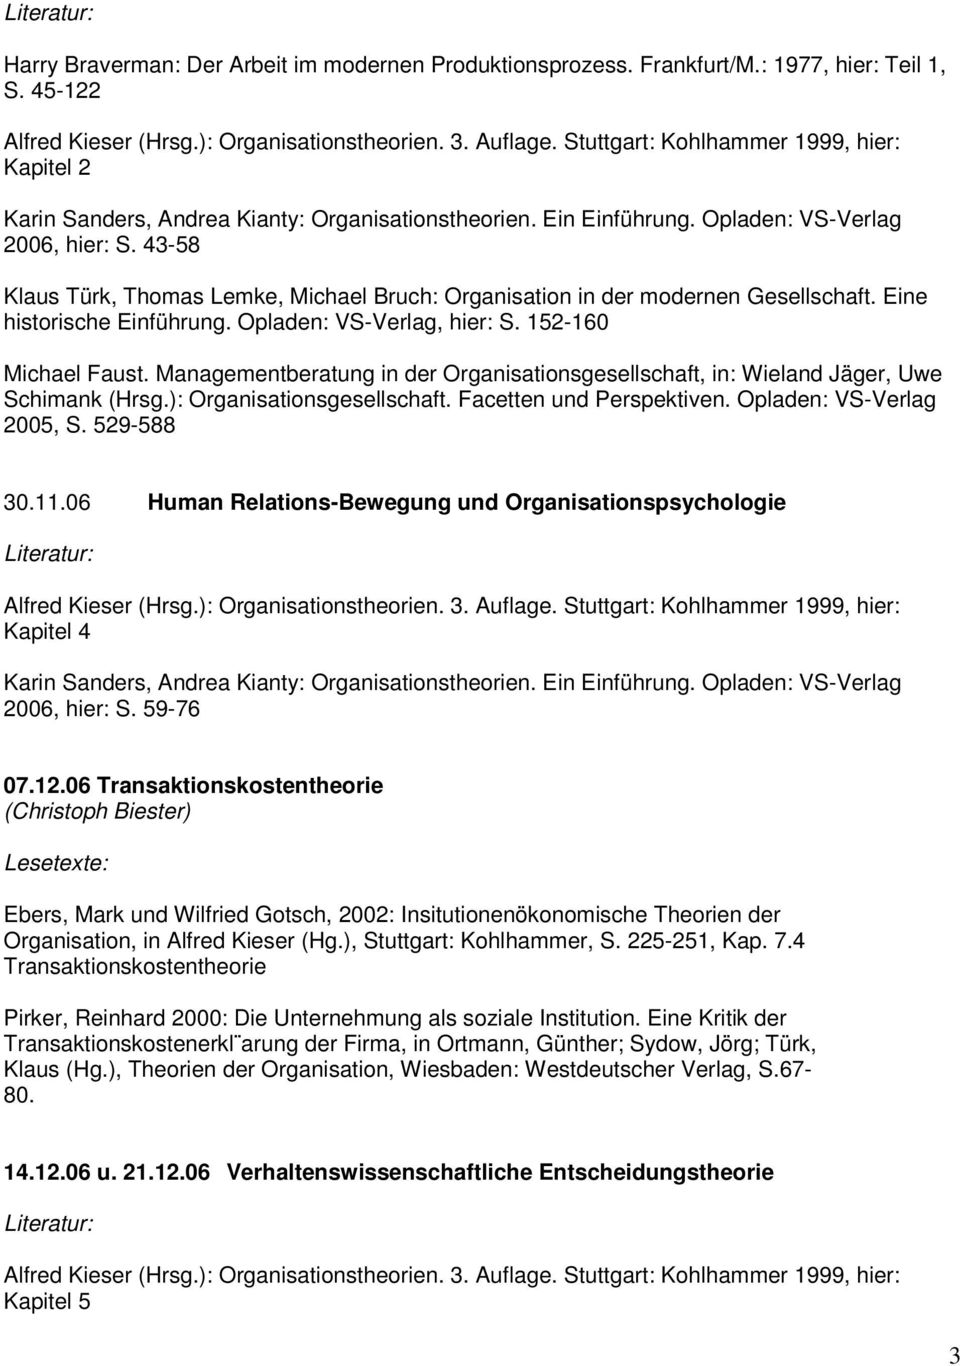 Managementberatung in der Organisationsgesellschaft, in: Wieland Jäger, Uwe Schimank (Hrsg.): Organisationsgesellschaft. Facetten und Perspektiven. Opladen: VS-Verlag 2005, S. 529-588 30.11.